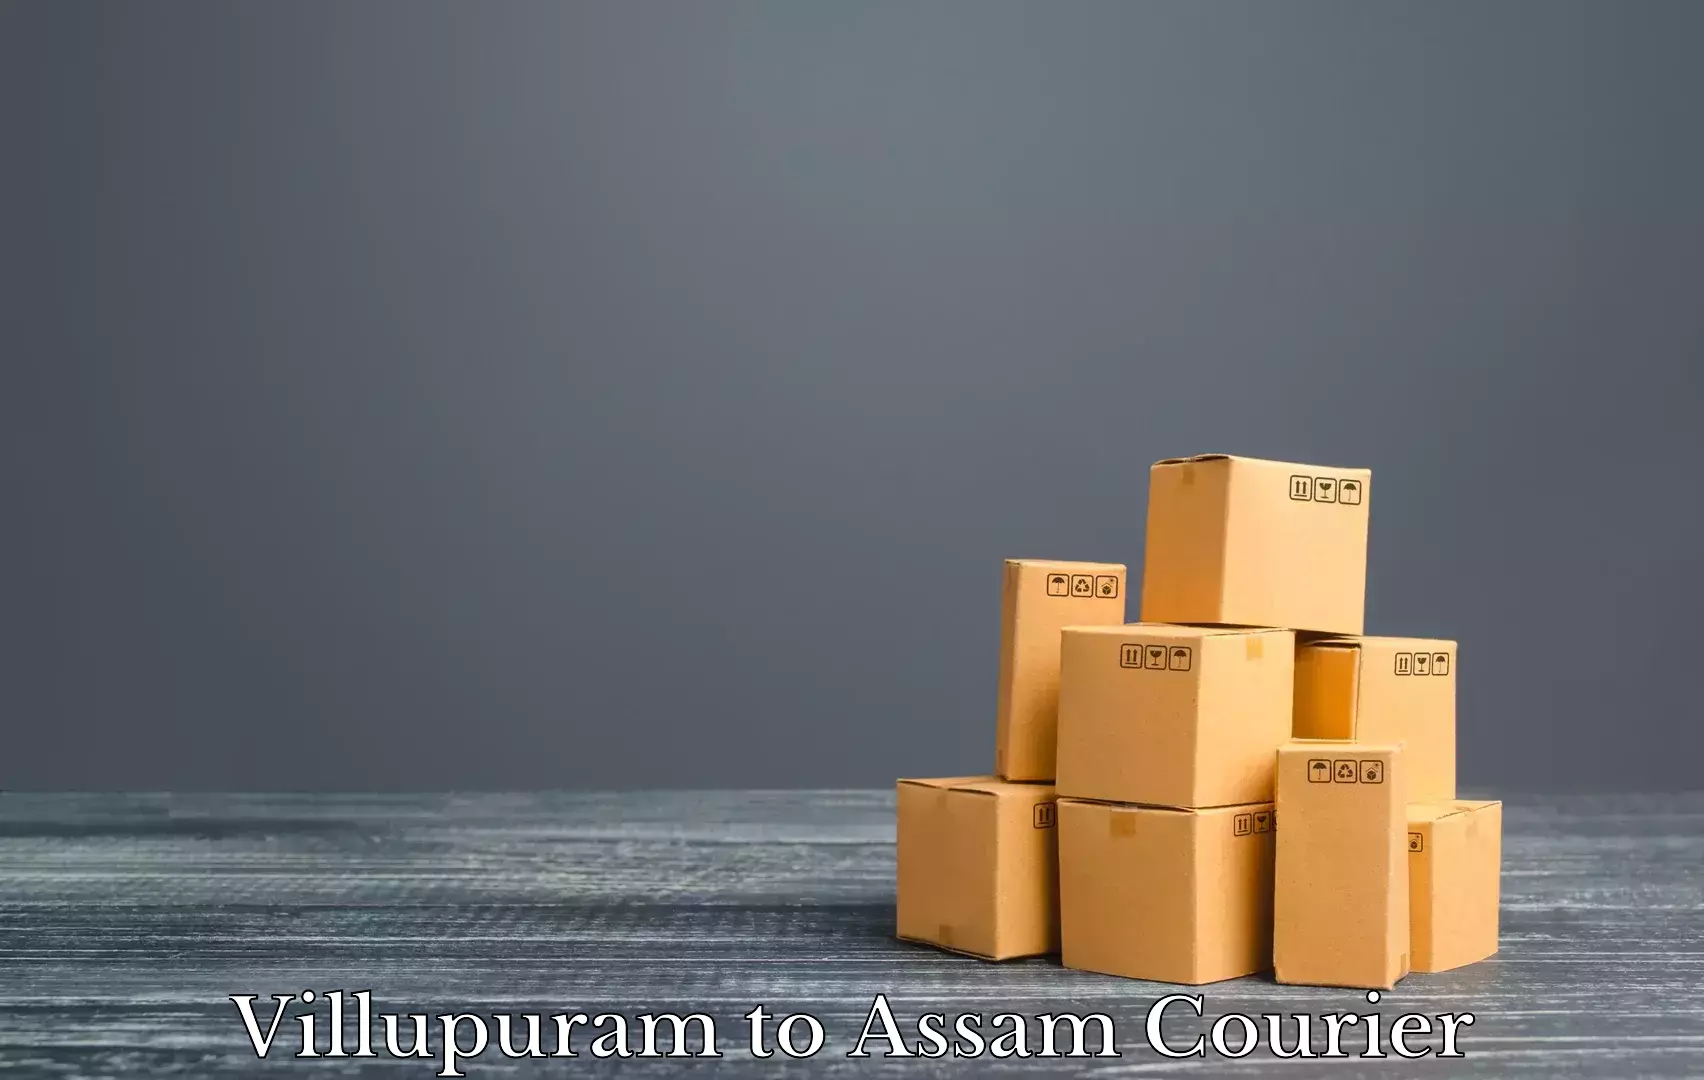 Furniture transport experts Villupuram to Tezpur University